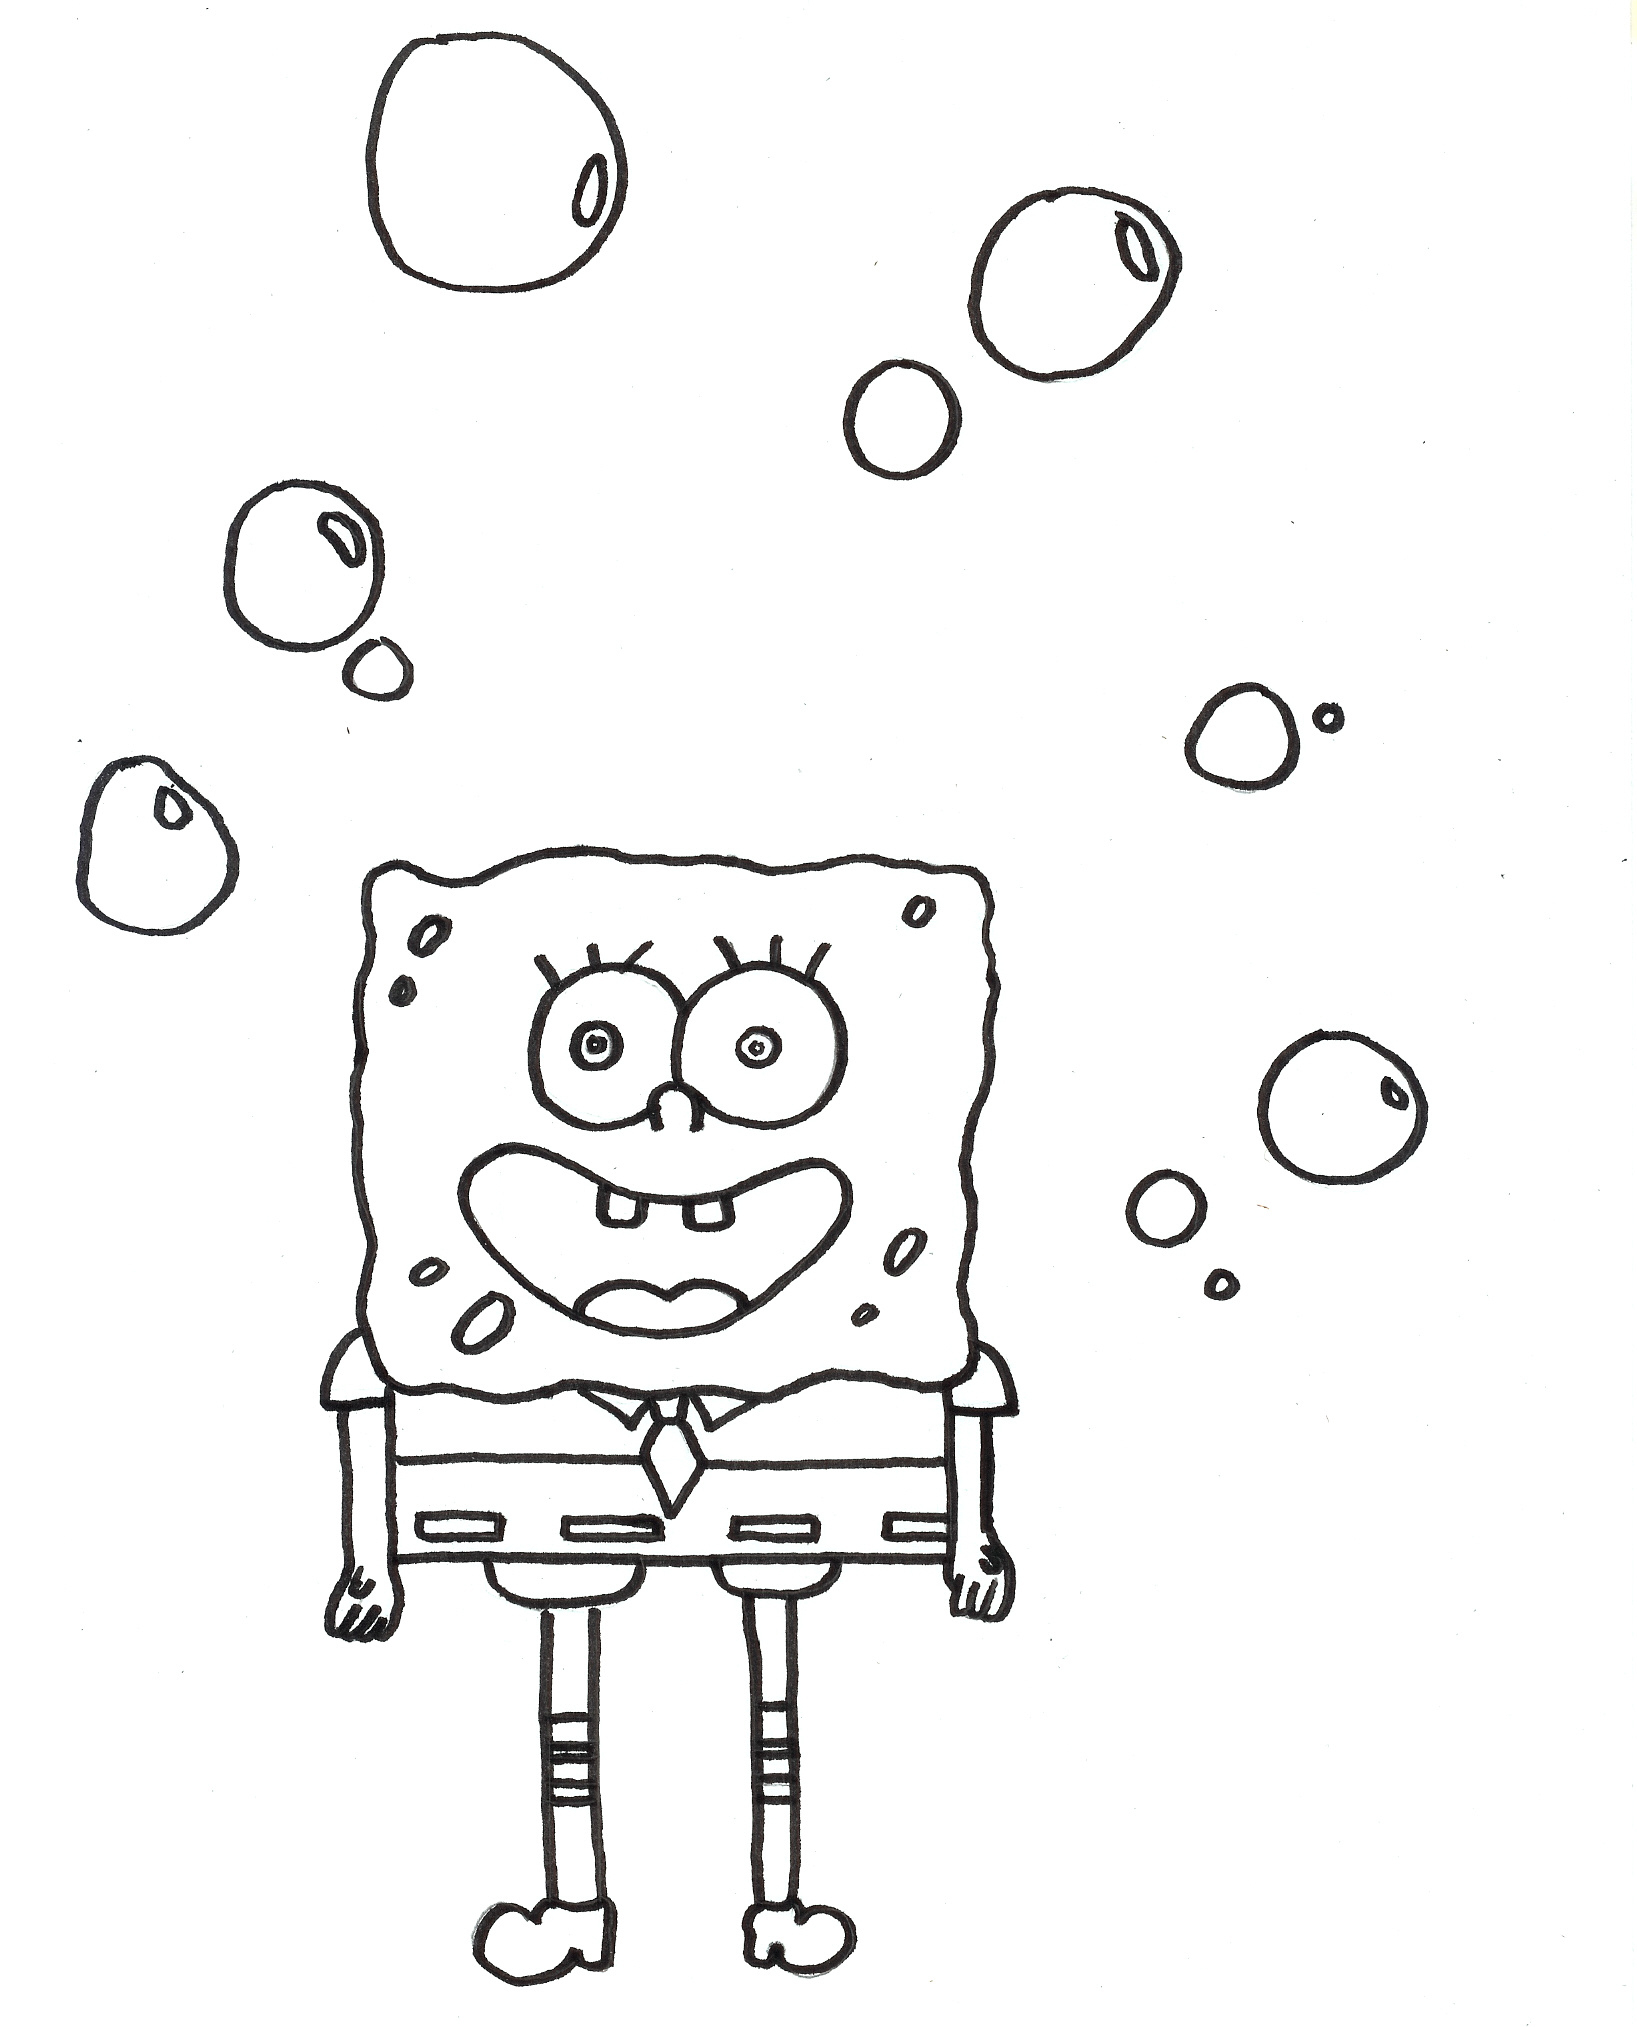 Malvorlagen - Ausmalbilder Spongebob | Ausmalbilder für Chuggington Malvorlagen